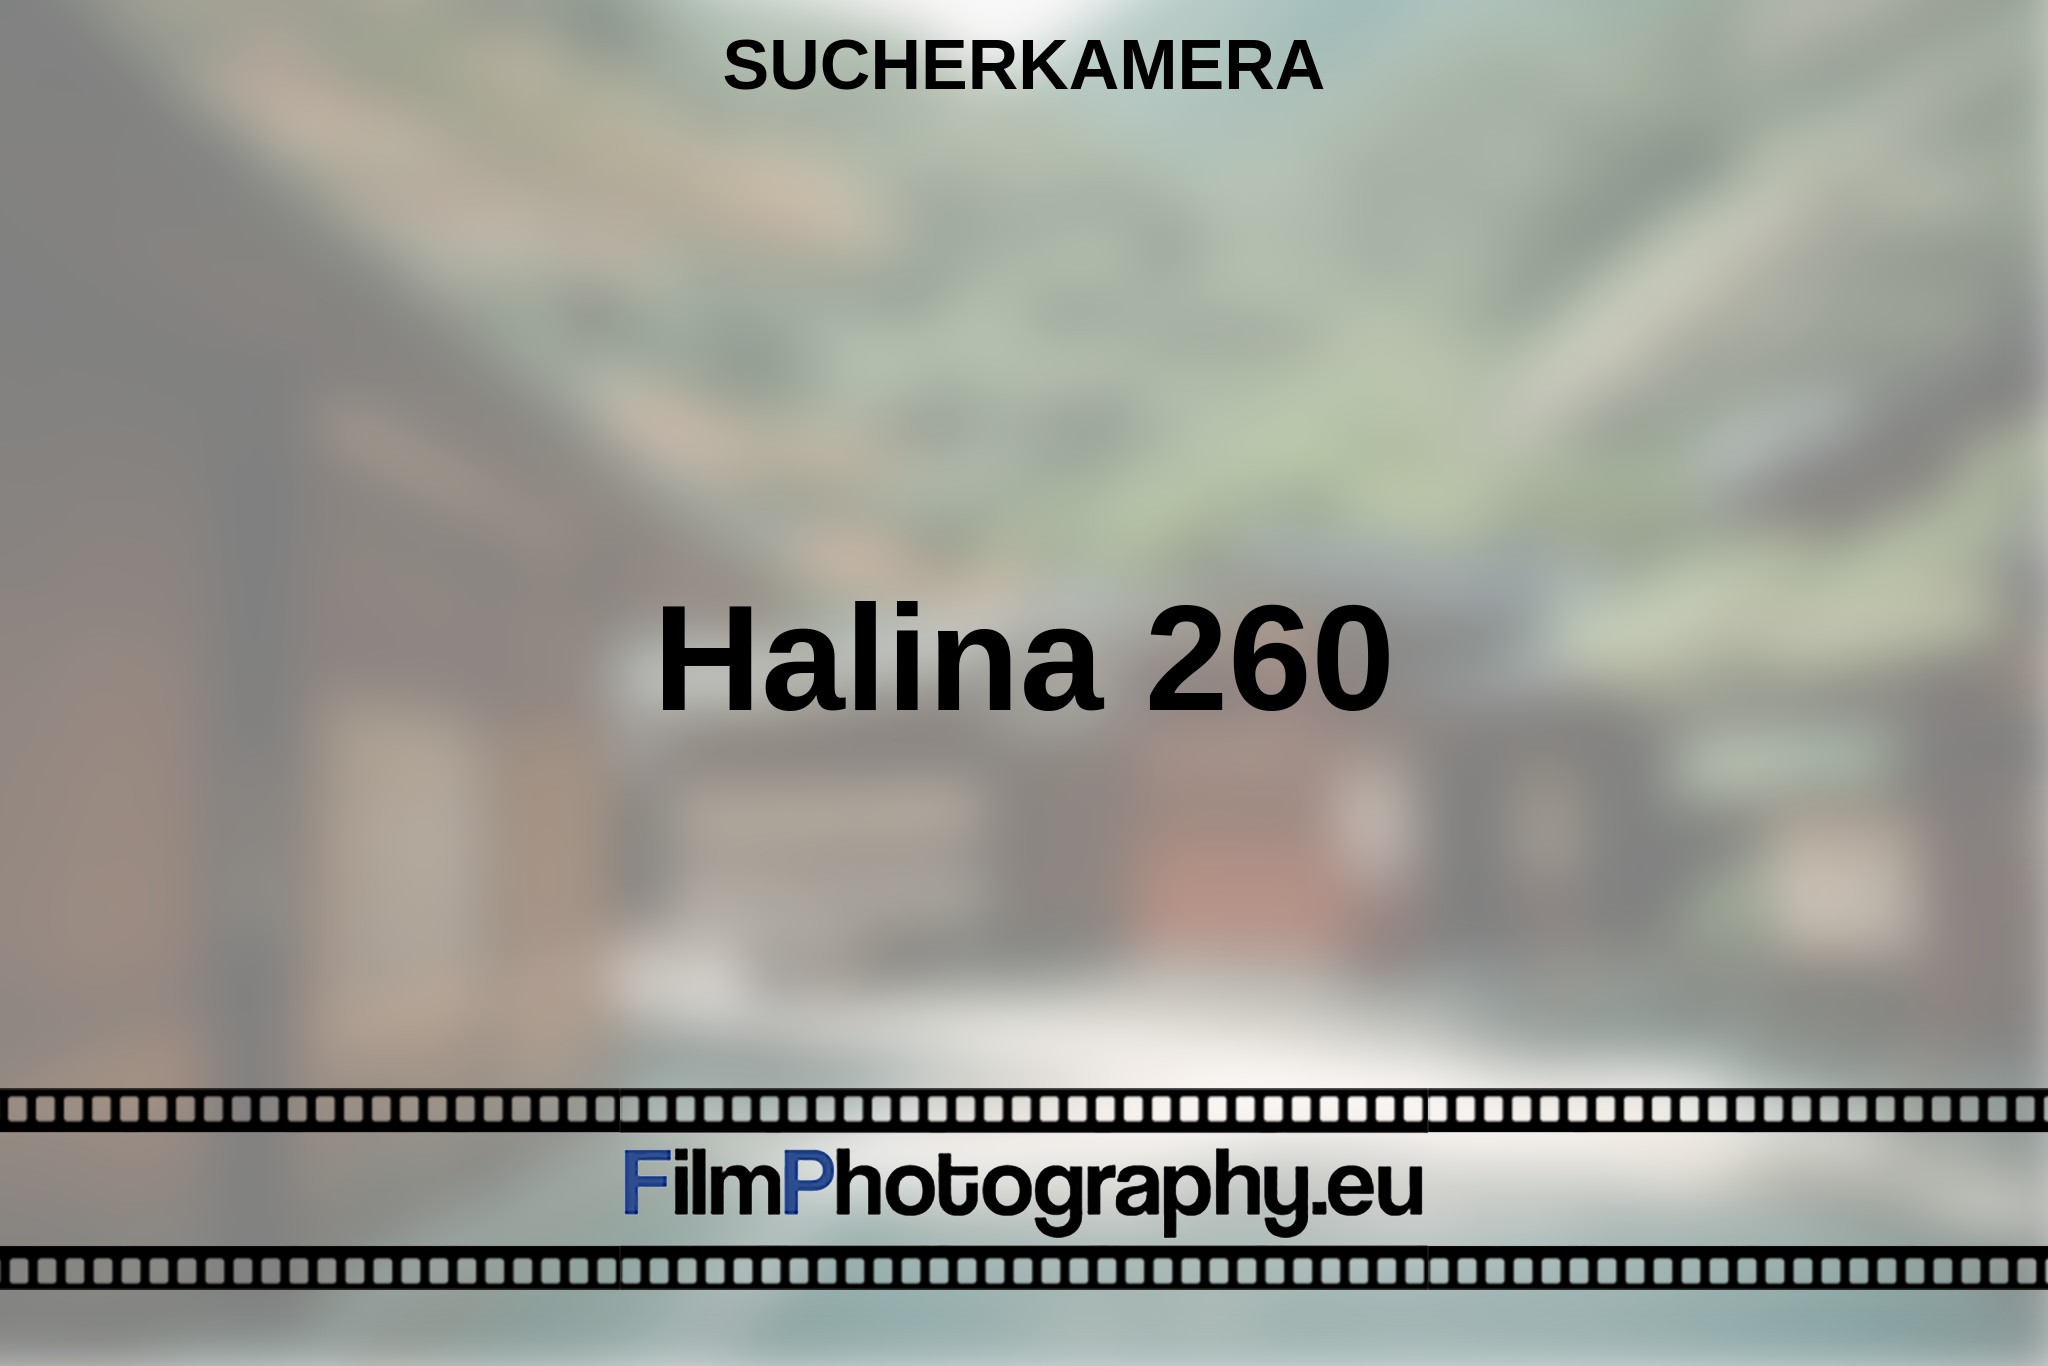 halina-260-sucherkamera-bnv.jpg